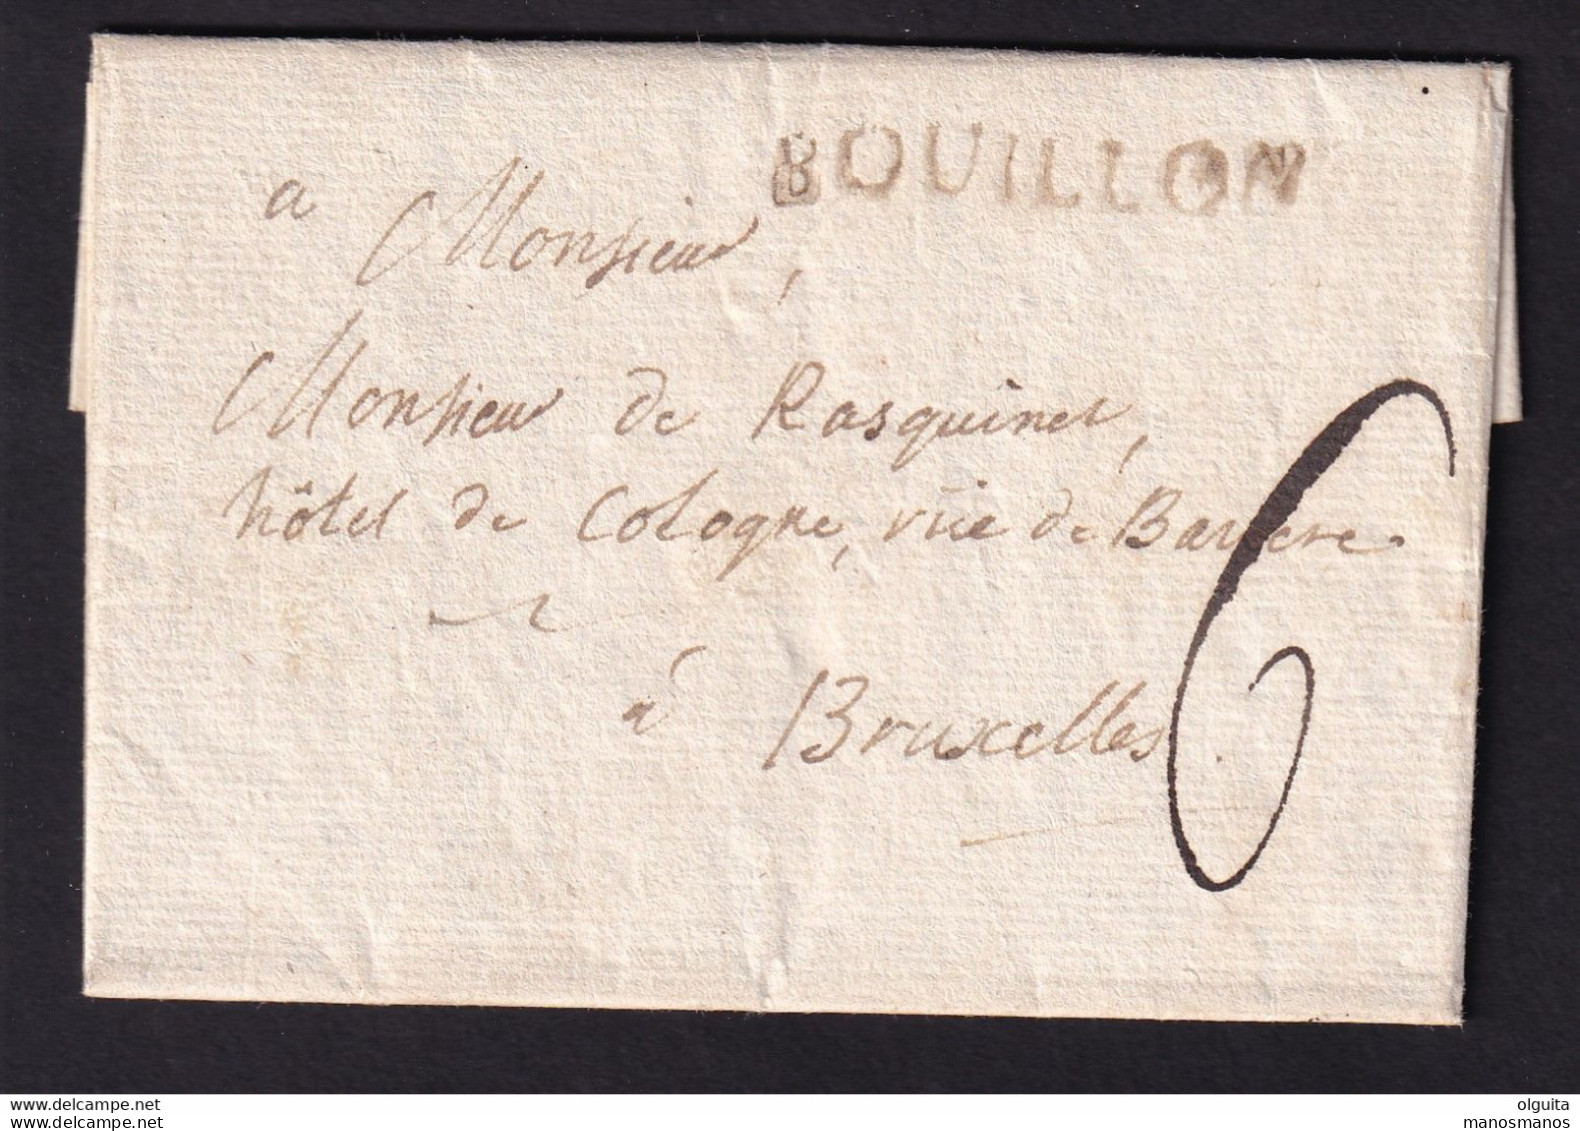 DDBB 269 - Lettre De 1791 , Griffe BOUILLON (Herlant 4) Vers Bruxelles , Port 6 Sols à L'encre - Signée Gentis - 1790-1794 (Révol. Autrich. Et Invas. Franç.)